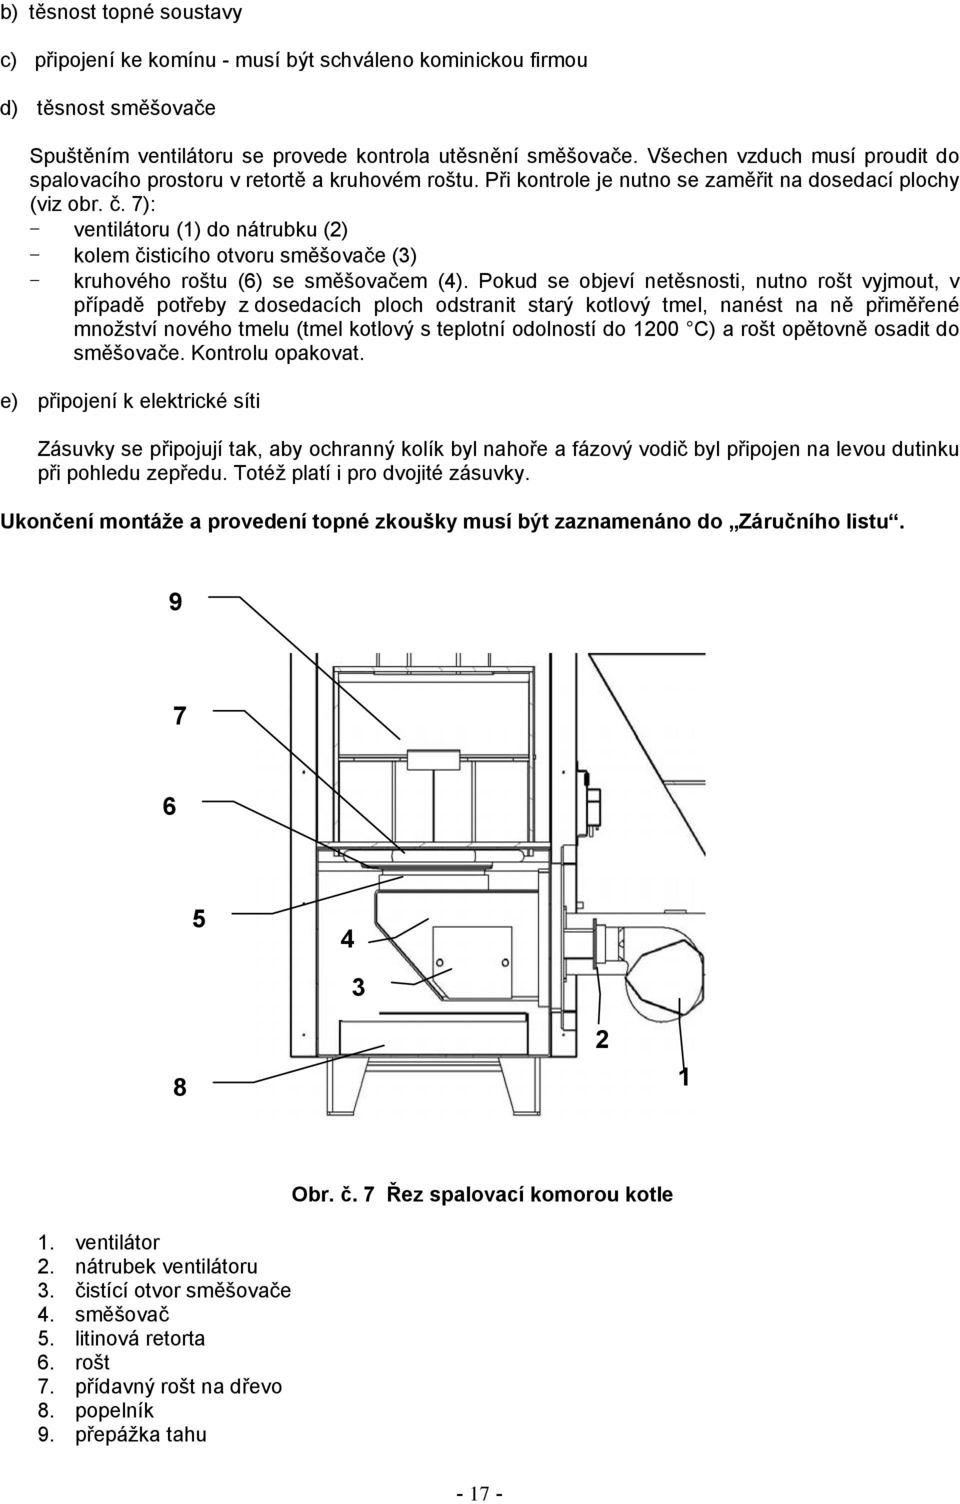 7): - ventilátoru (1) do nátrubku (2) - kolem čisticího otvoru směšovače (3) - kruhového roštu (6) se směšovačem (4).